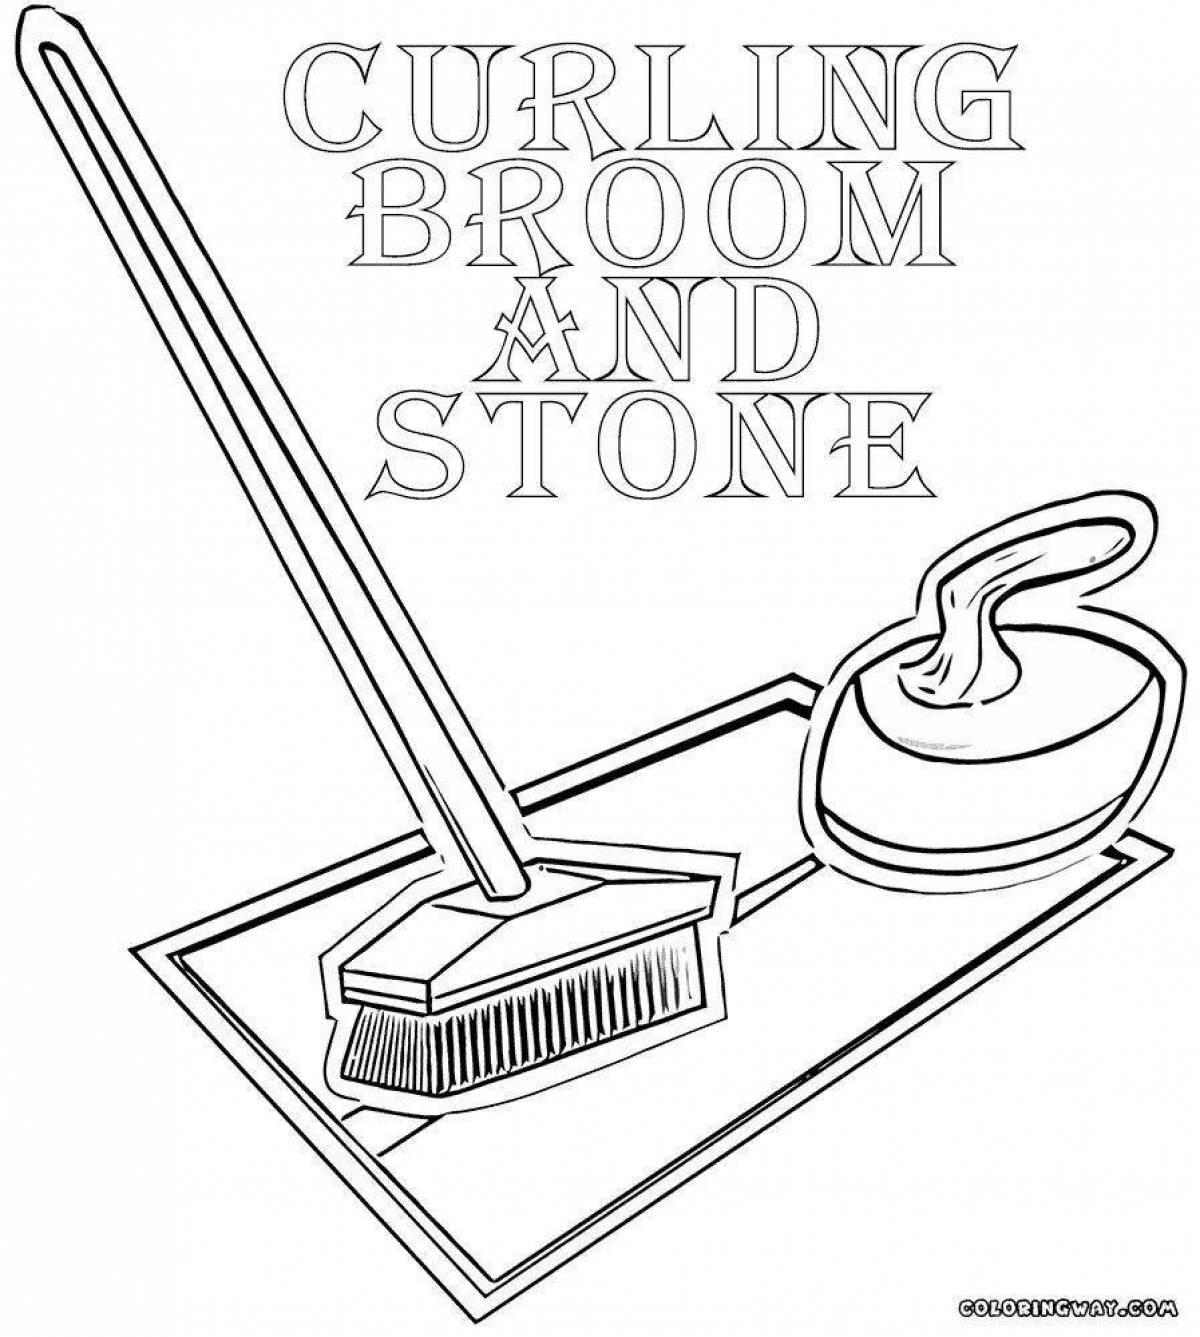 Fun curling coloring book